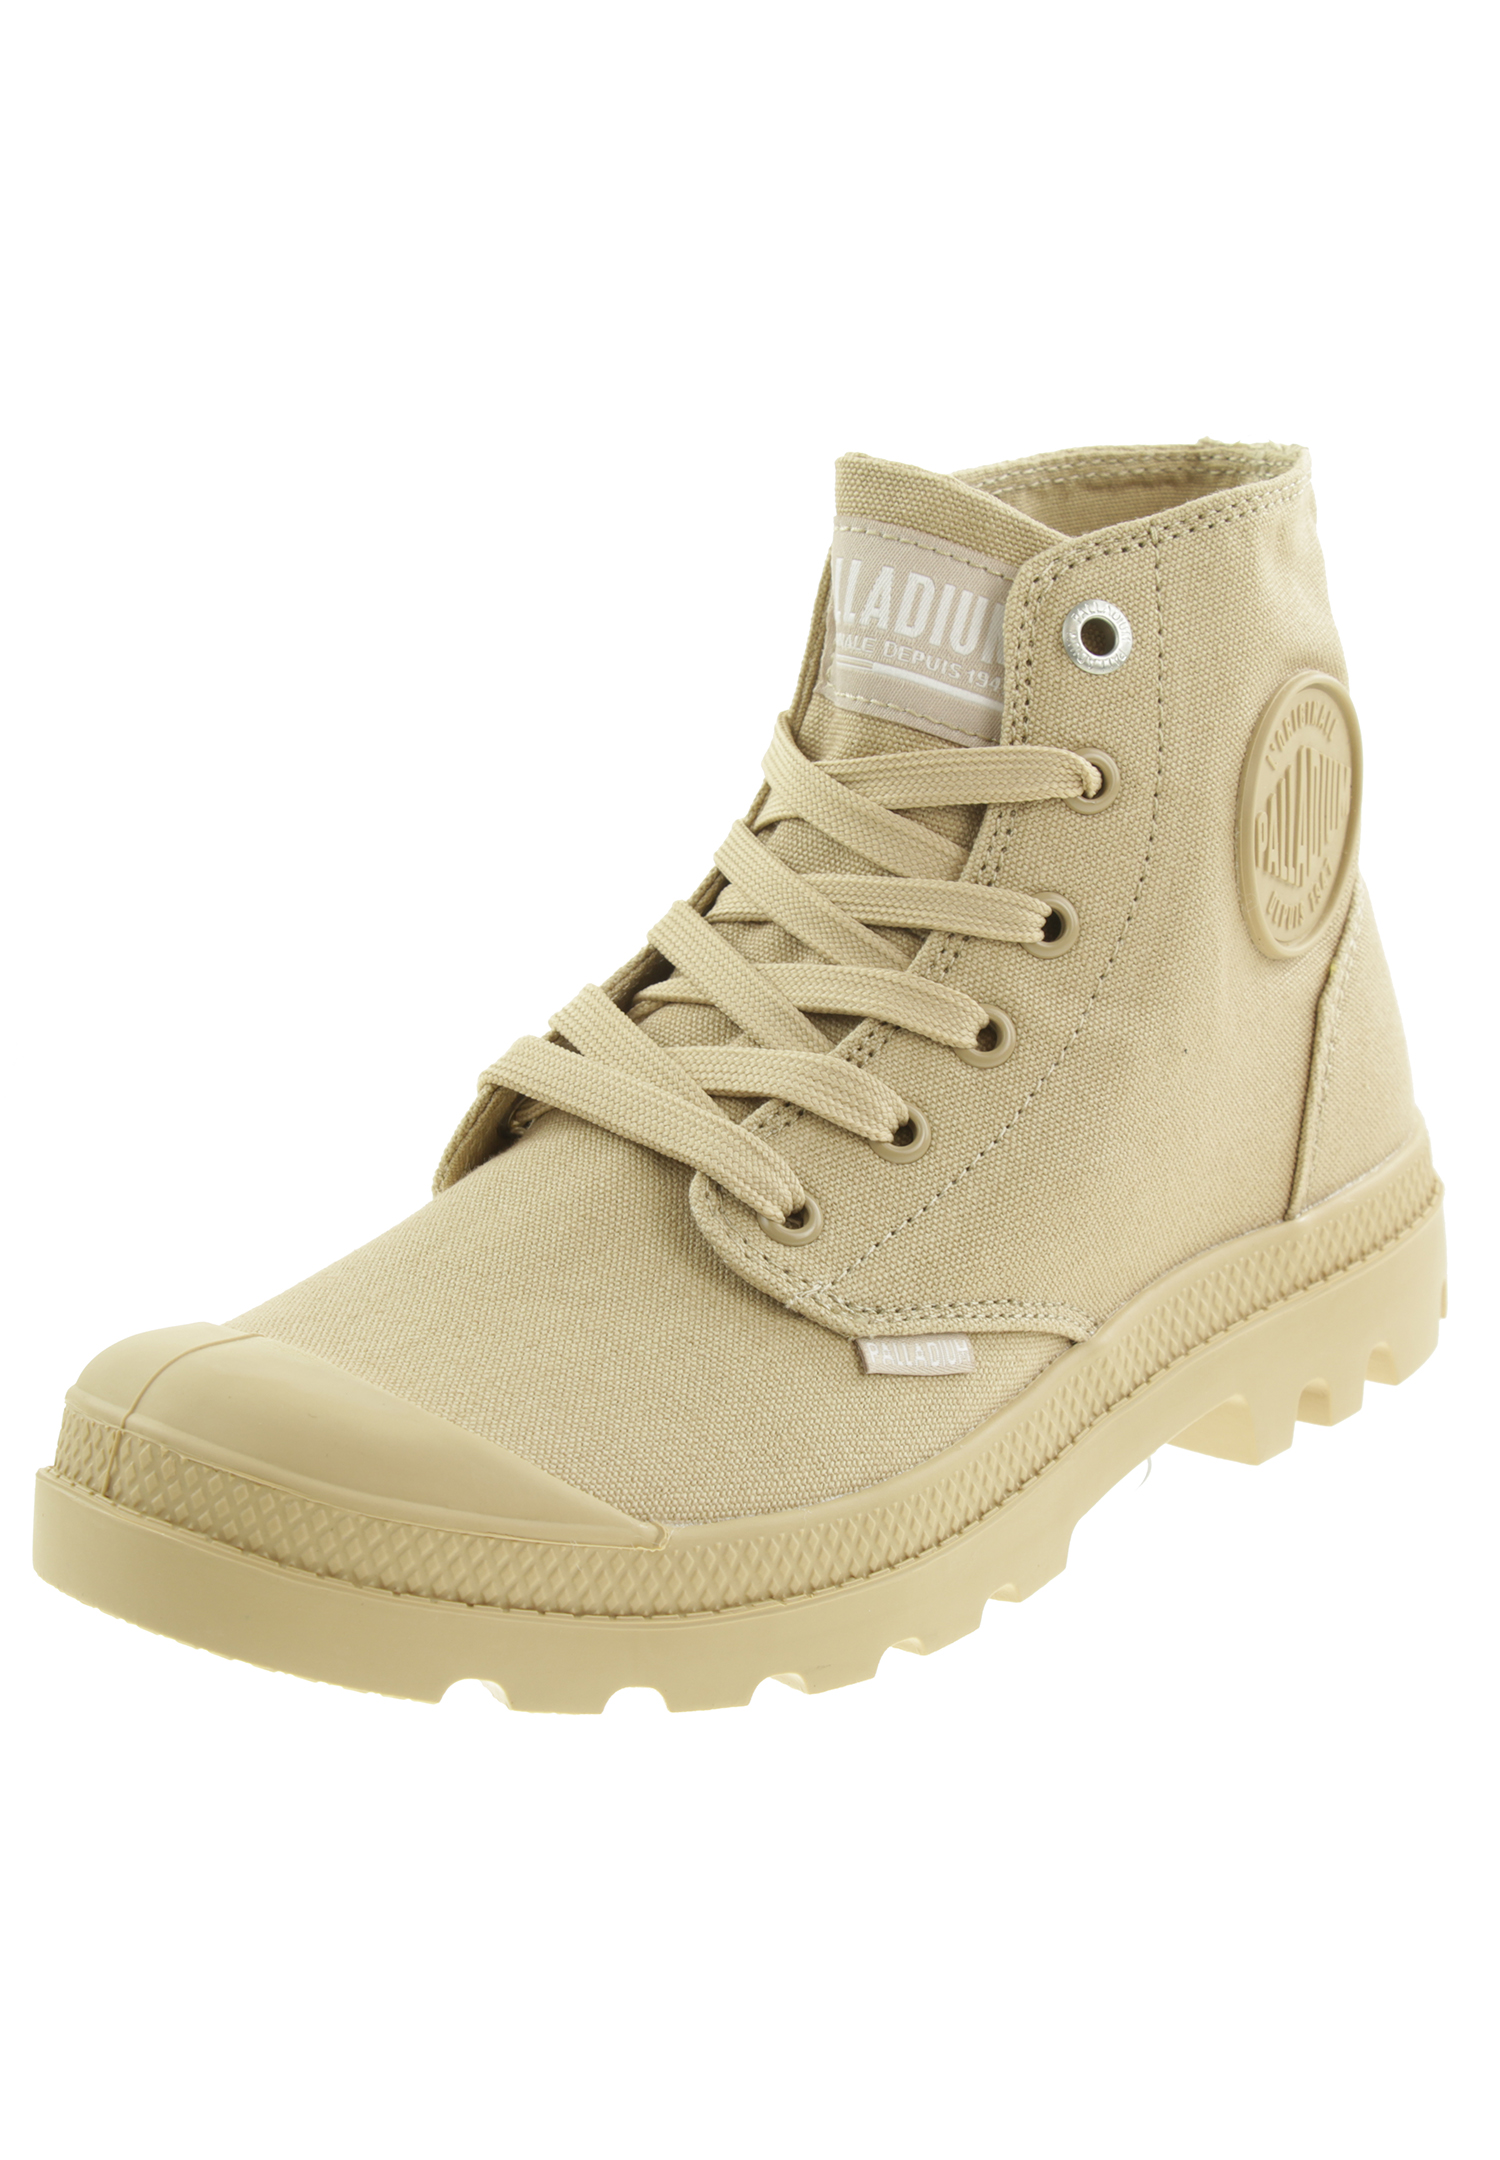 Palladium Unisex Pampa Hi Mono Boots Stiefelette 73089 beige, Schuhgröße:36 EU